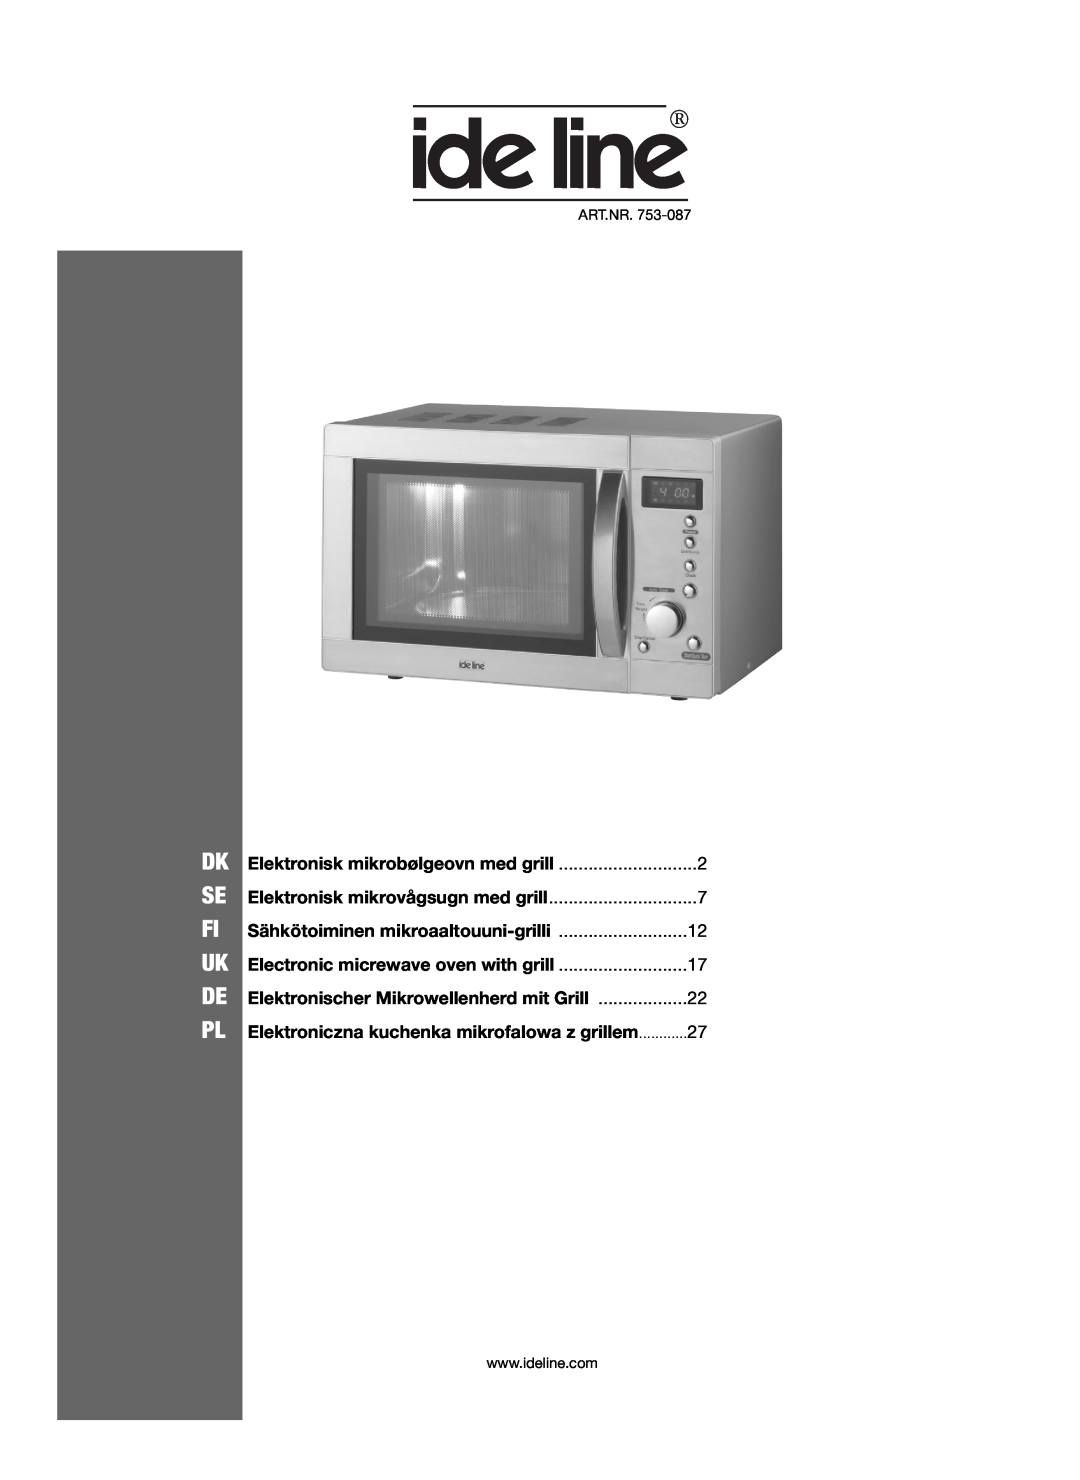 Melissa 753-087 manual Elektronisk mikrobølgeovn med grill, Dk Se Fi Uk De Pl, Sähkötoiminen mikroaaltouuni-grilli 